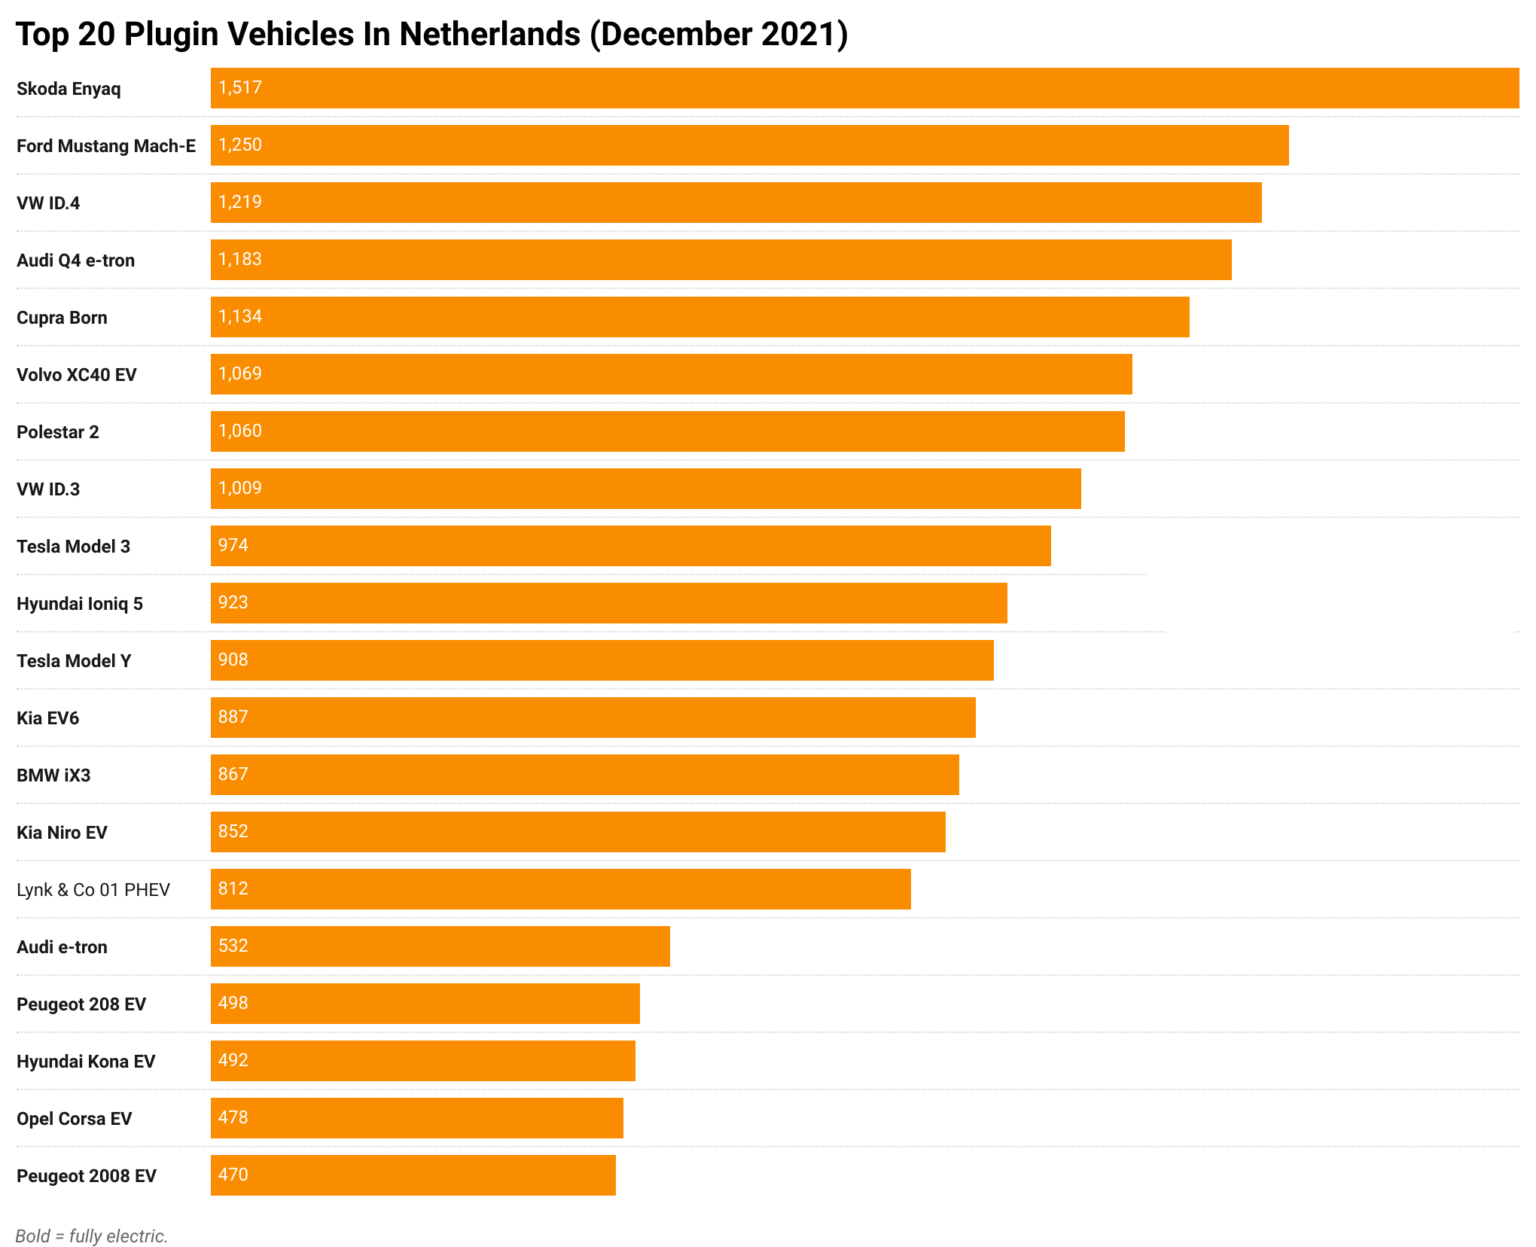 CleanTechnica 20 top plugin vehicles in NetherlandsDecember 2021